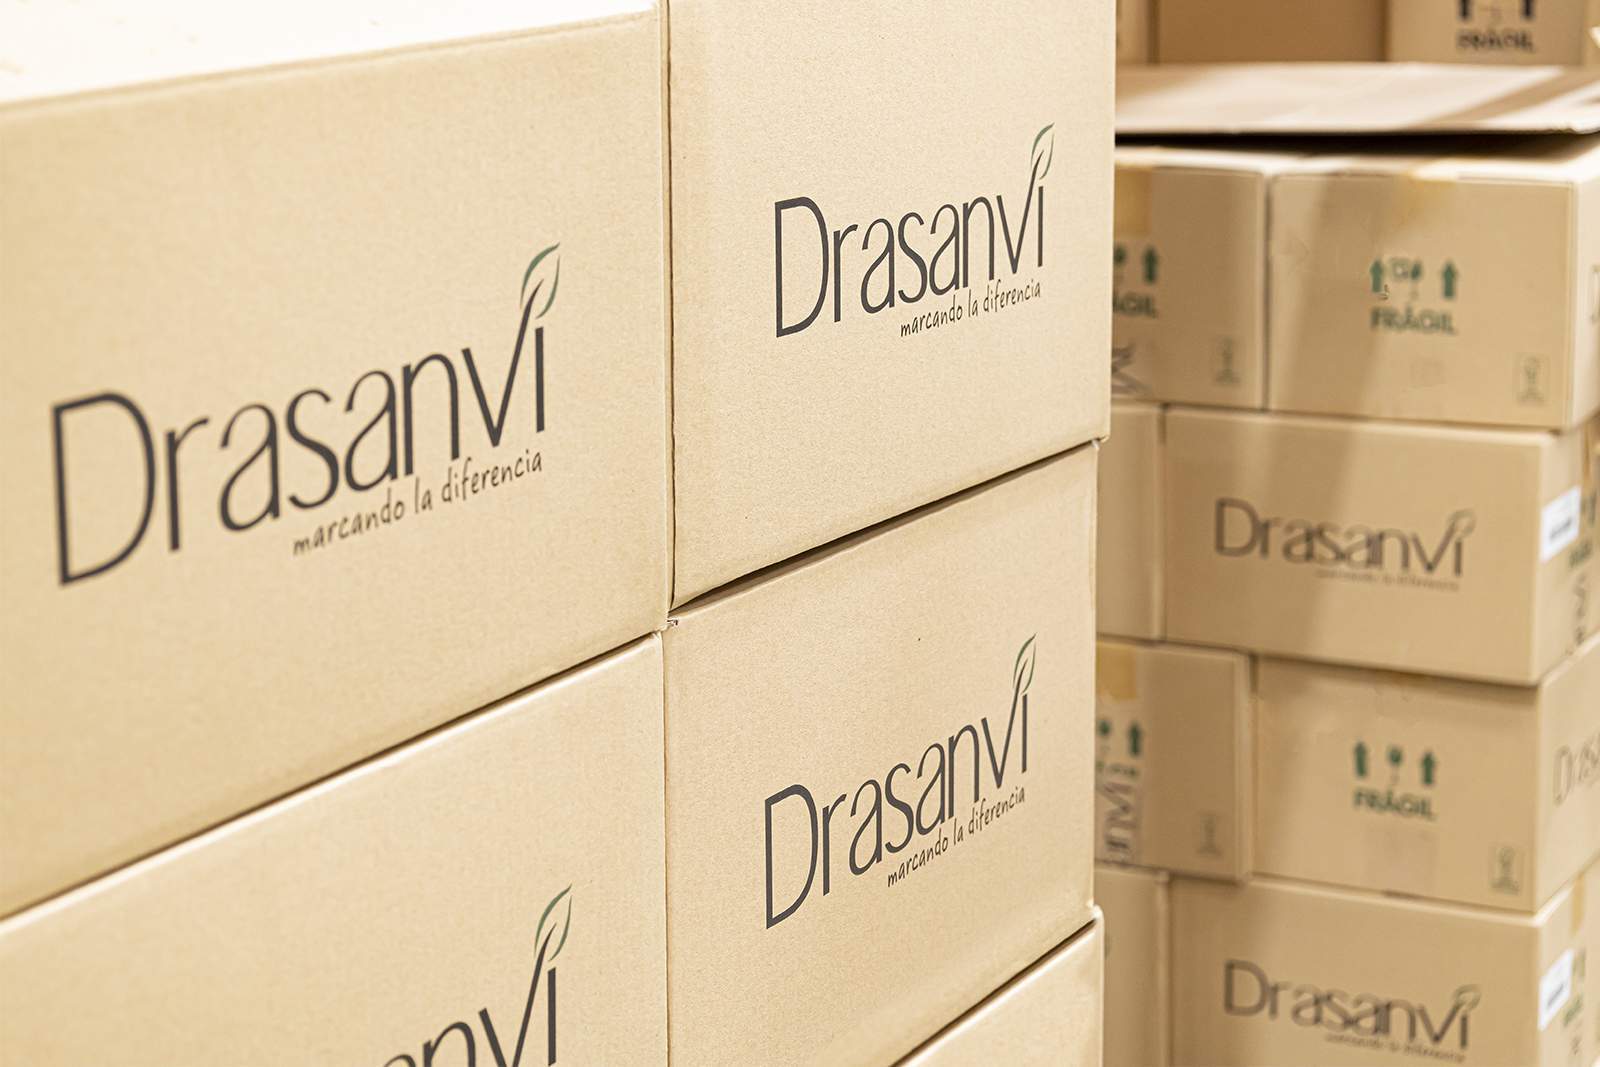 Les boîtes de distribution sont fabriquées en carton brut avec du papier gommé et du ruban adhésif recyclé.